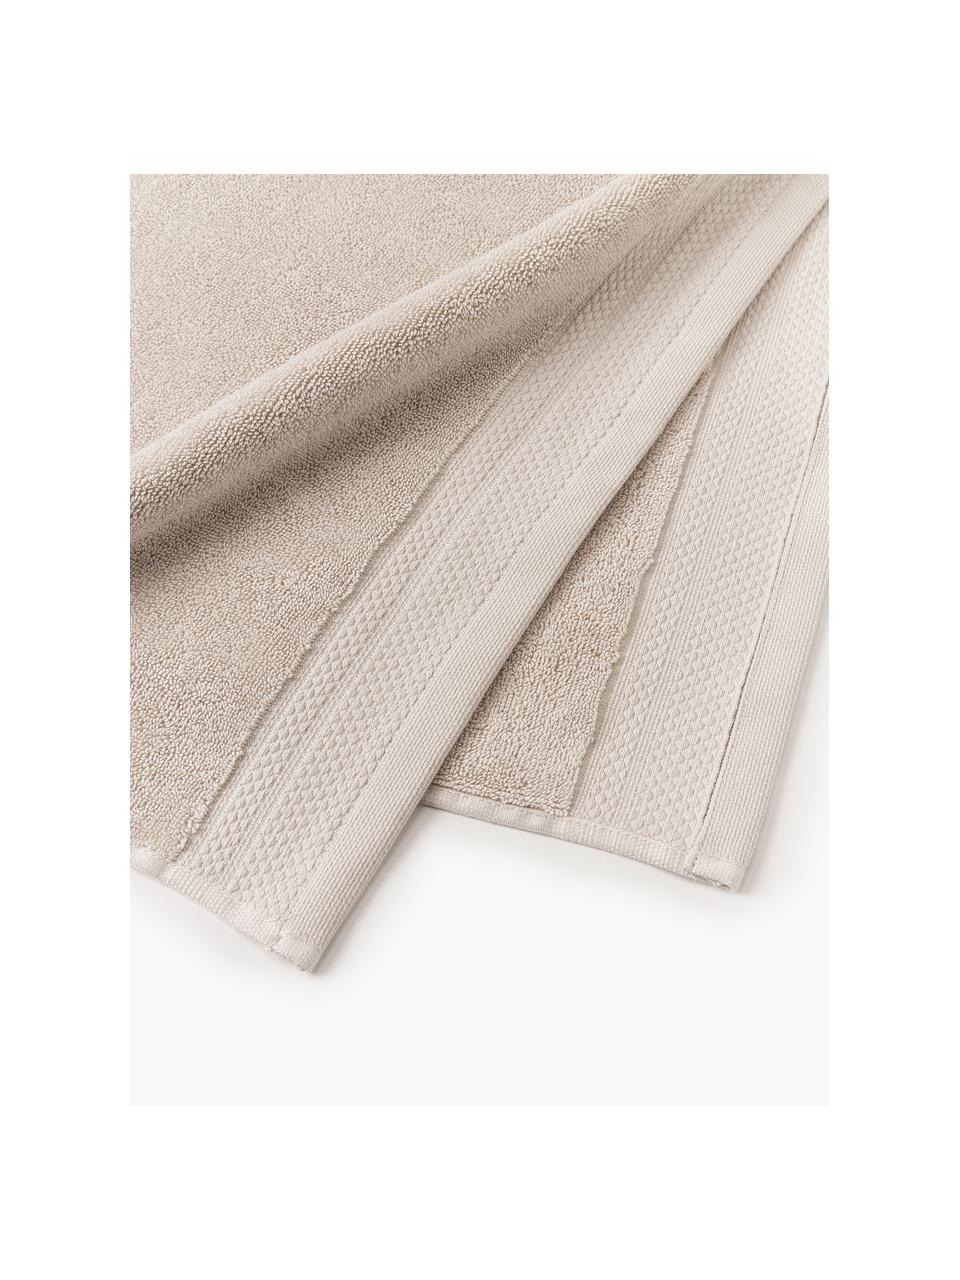 Handtuch Premium aus Bio-Baumwolle, in verschiedenen Grössen, 100 % Bio-Baumwolle, GOTS-zertifiziert (von GCL International, GCL-300517)
 Schwere Qualität, 600 g/m², Hellbeige, Handtuch, B 50 x L 100 cm